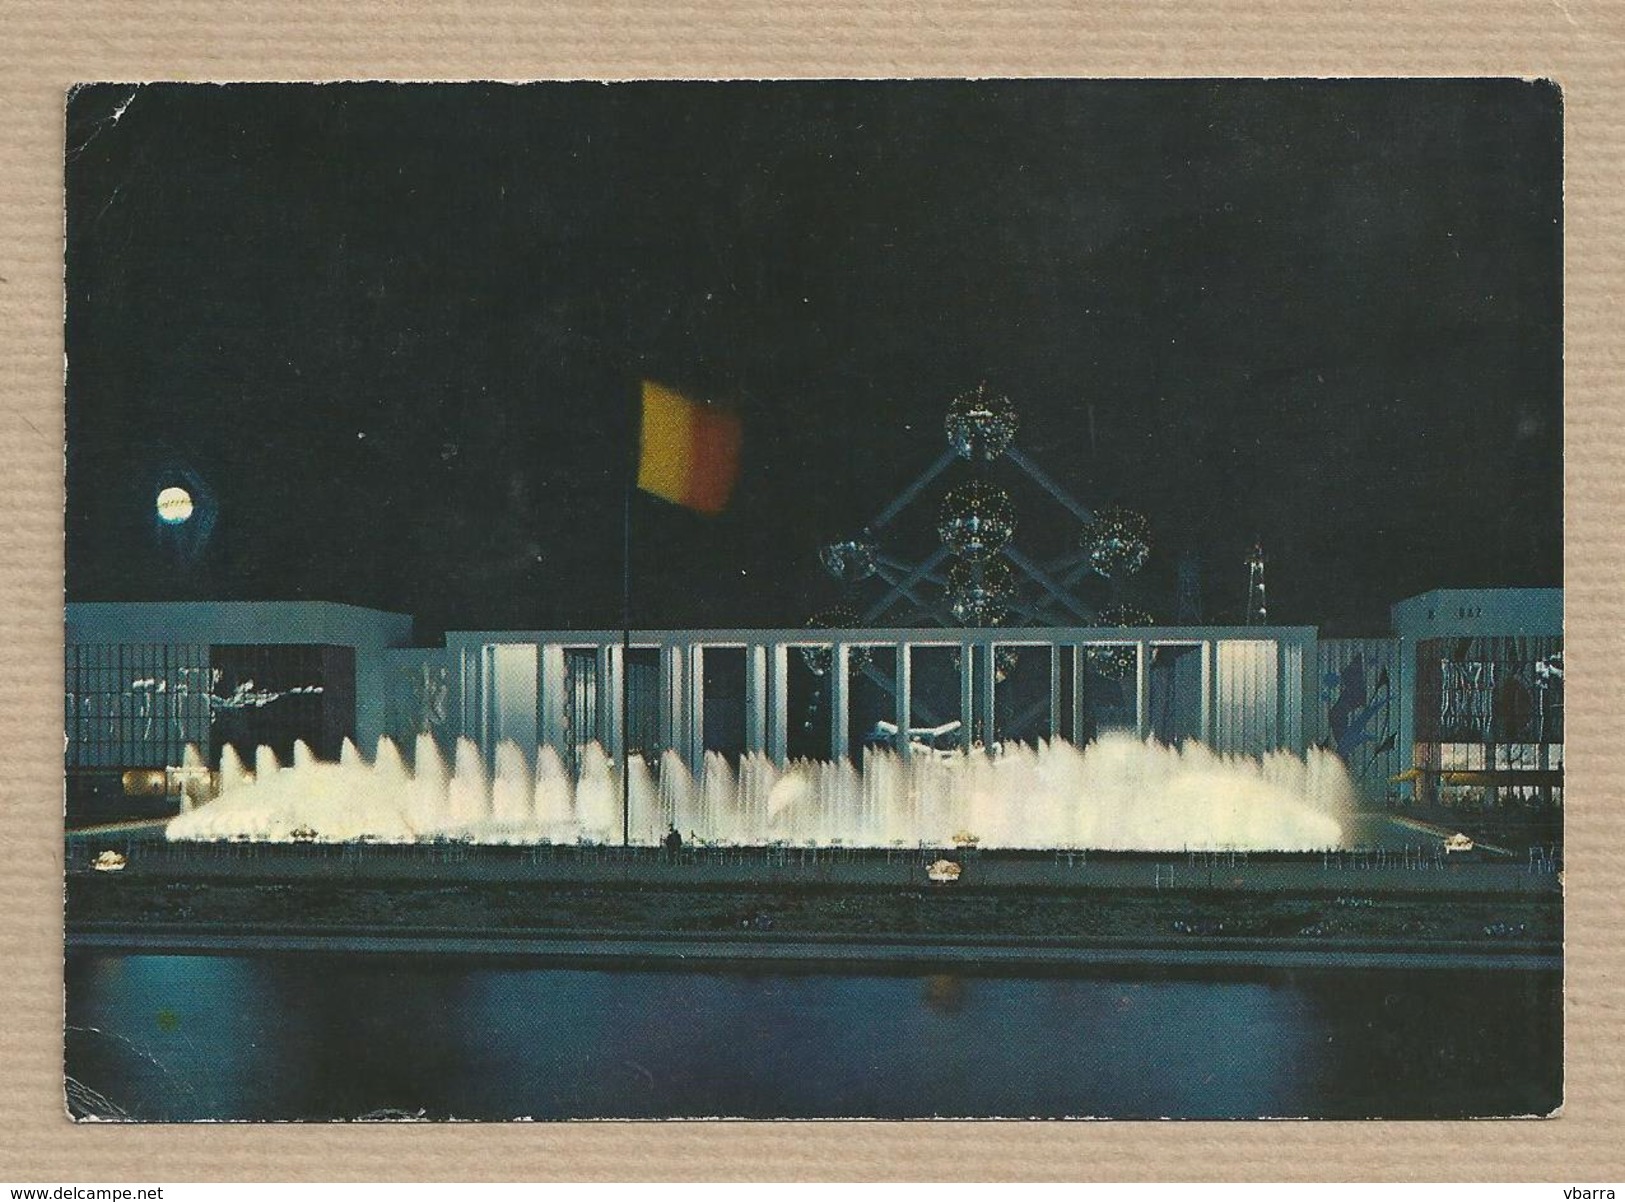 BELGIQUE Carte Postale. BRUXELLES / BRUSSEL / EXPO 1958 / PLACE DE BELGIQUE / ATOMIUM Timbre-poste Reine Juliana 20 C. - Exposiciones Universales